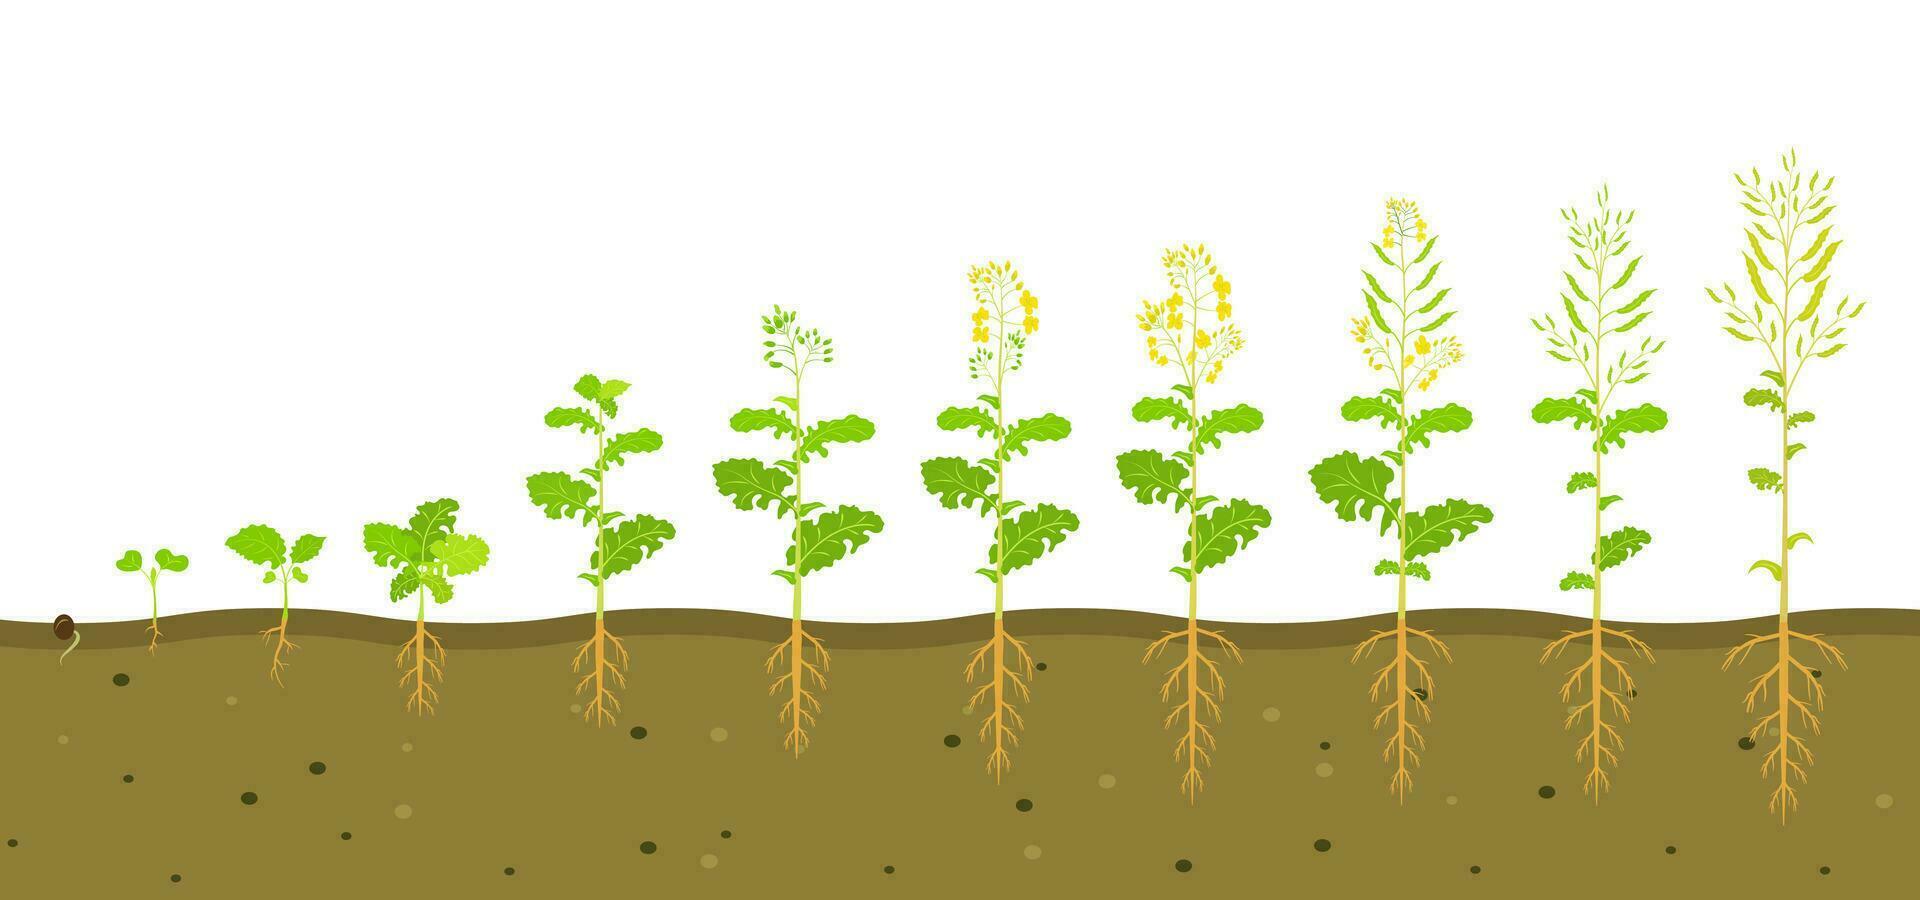 groei fiets van koolzaad in bodem. fasen van ontwikkeling van wortel systeem van planten. vector illustratie van groeit zaailingen